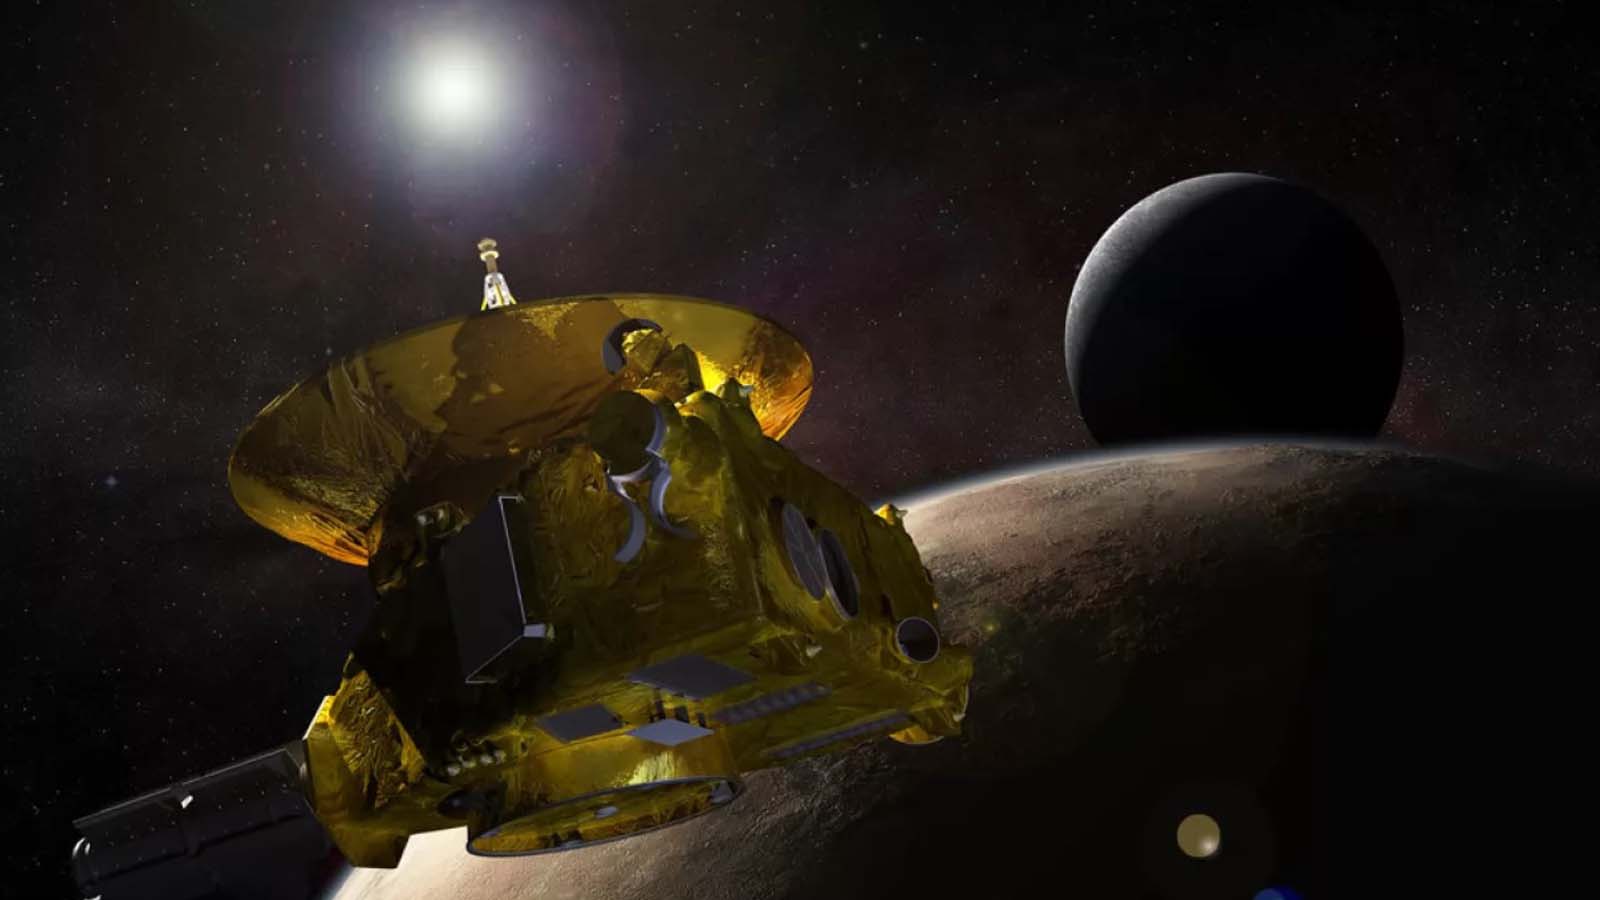 Alla scoperta di segreti nella misteriosa Cintura di Kuiper con la sonda New Horizons